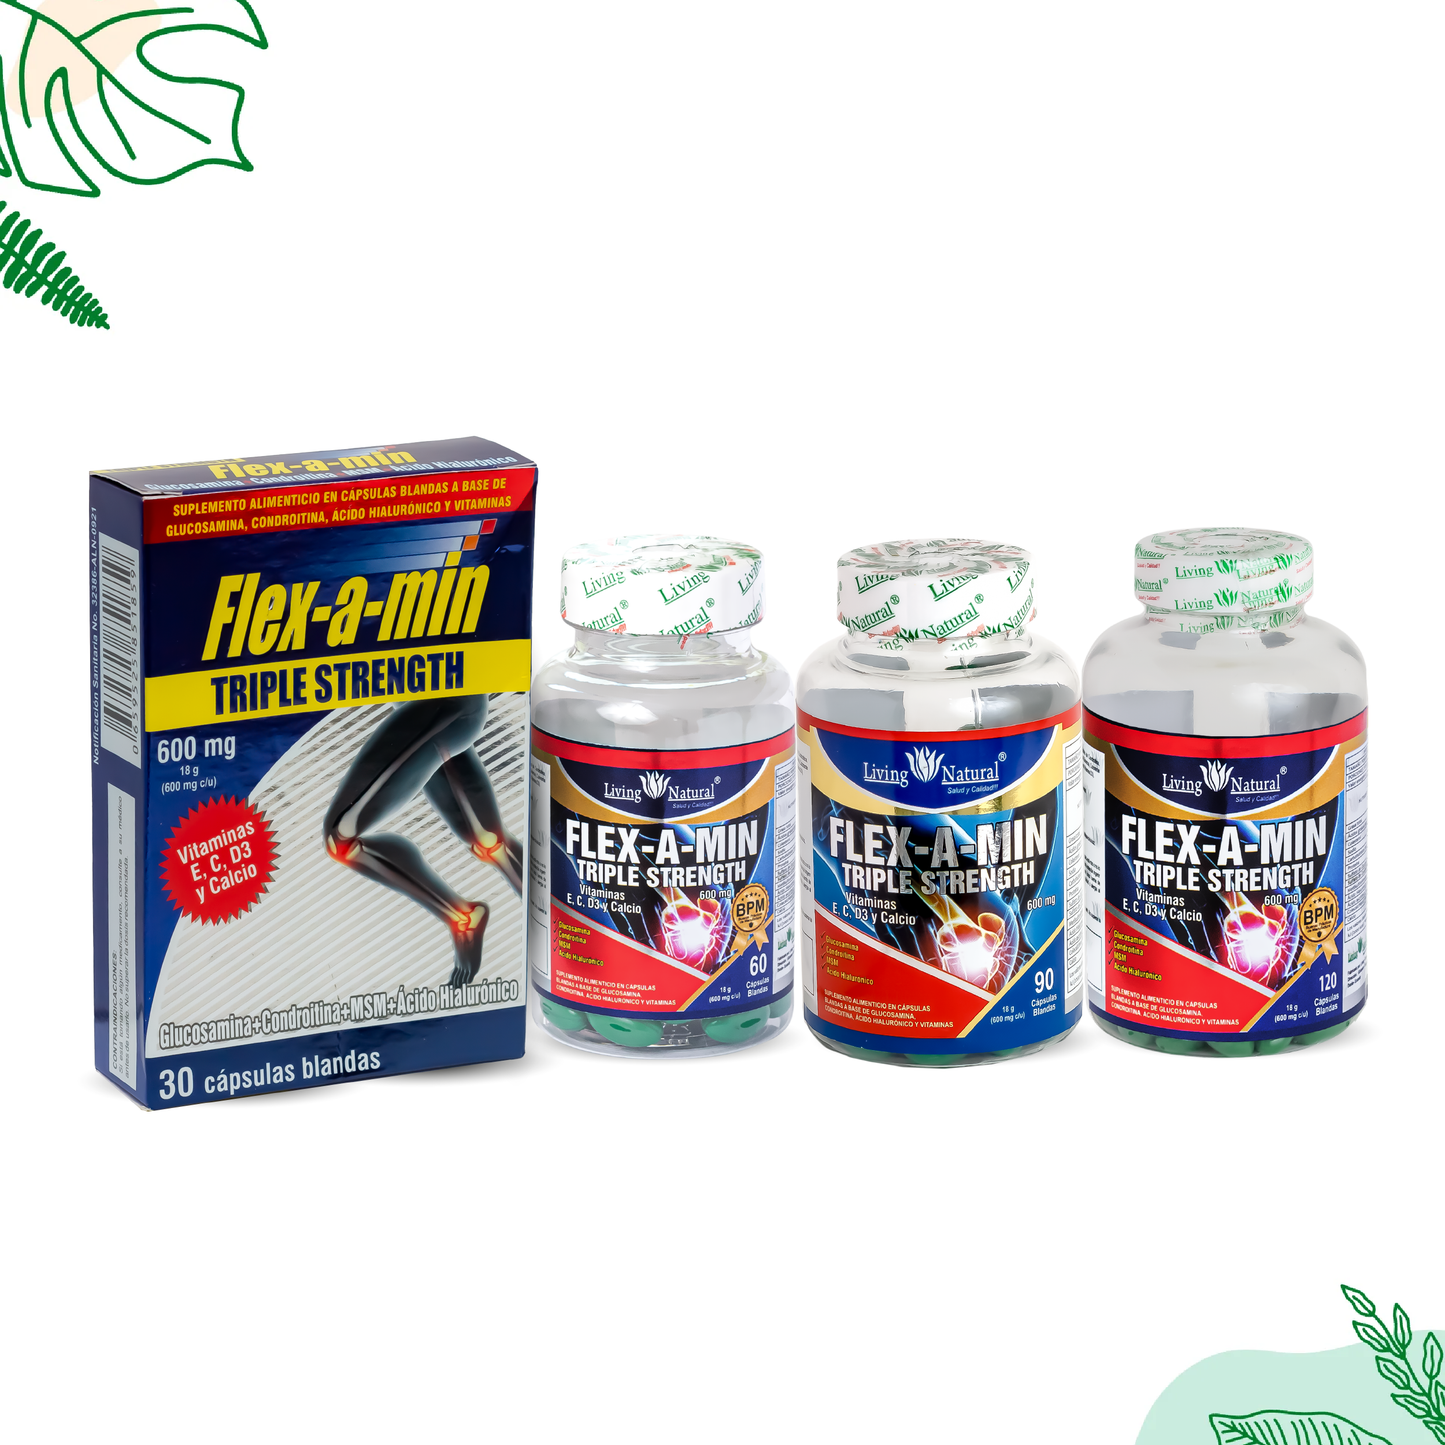 FLEX-A-MIN TRIPLE STRENGTH | 600 mg | X30, X90, X120